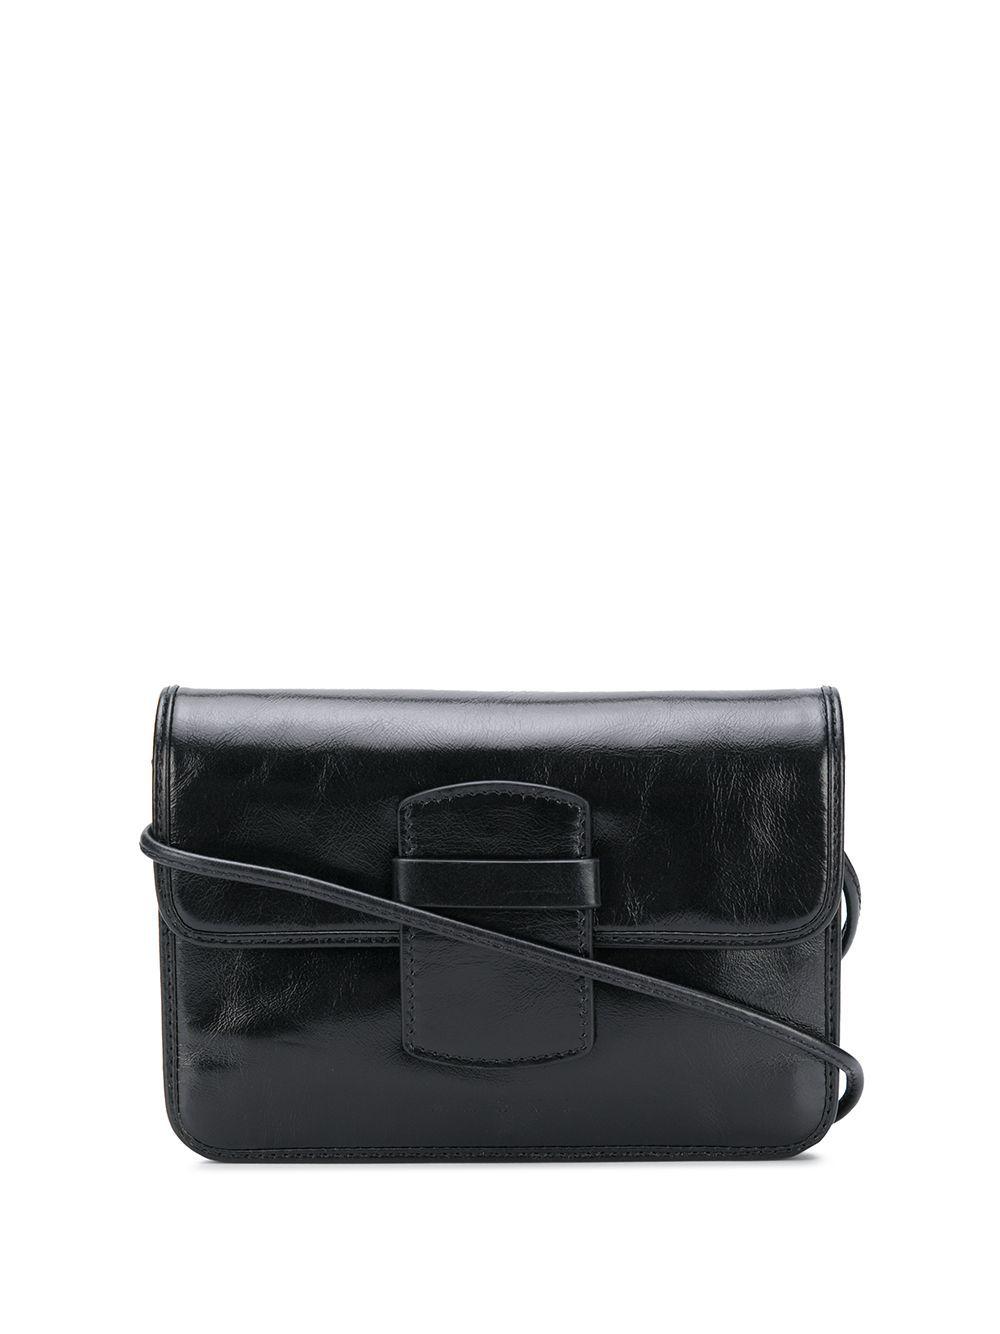 Marni Leather Shoulder Bag in Black - Lyst